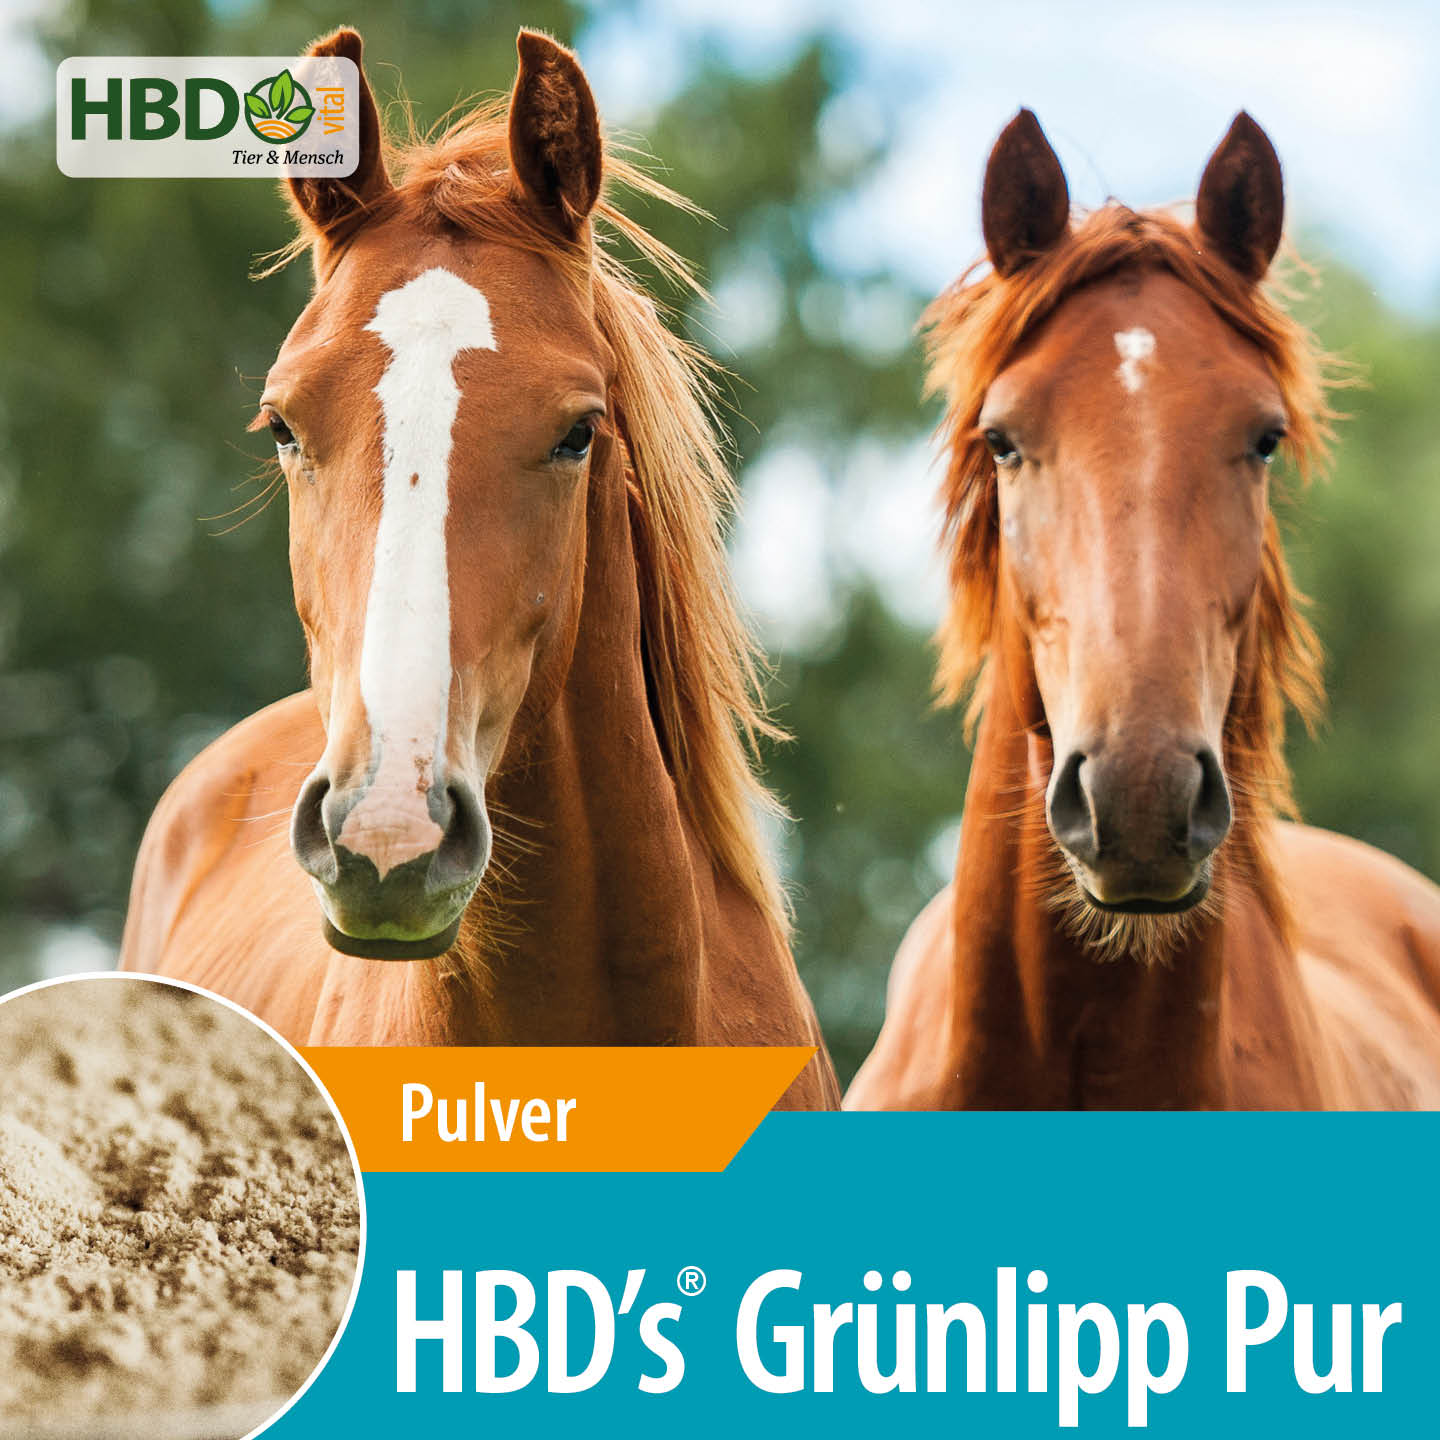 Shopbild für HBD’s Gruenlipp Pur - Das Bild zeigt den Produktnamen sowie den Hinweis, dass es sich um ein Pulver handelt. Zwei braune Pferde sind zu sehen.